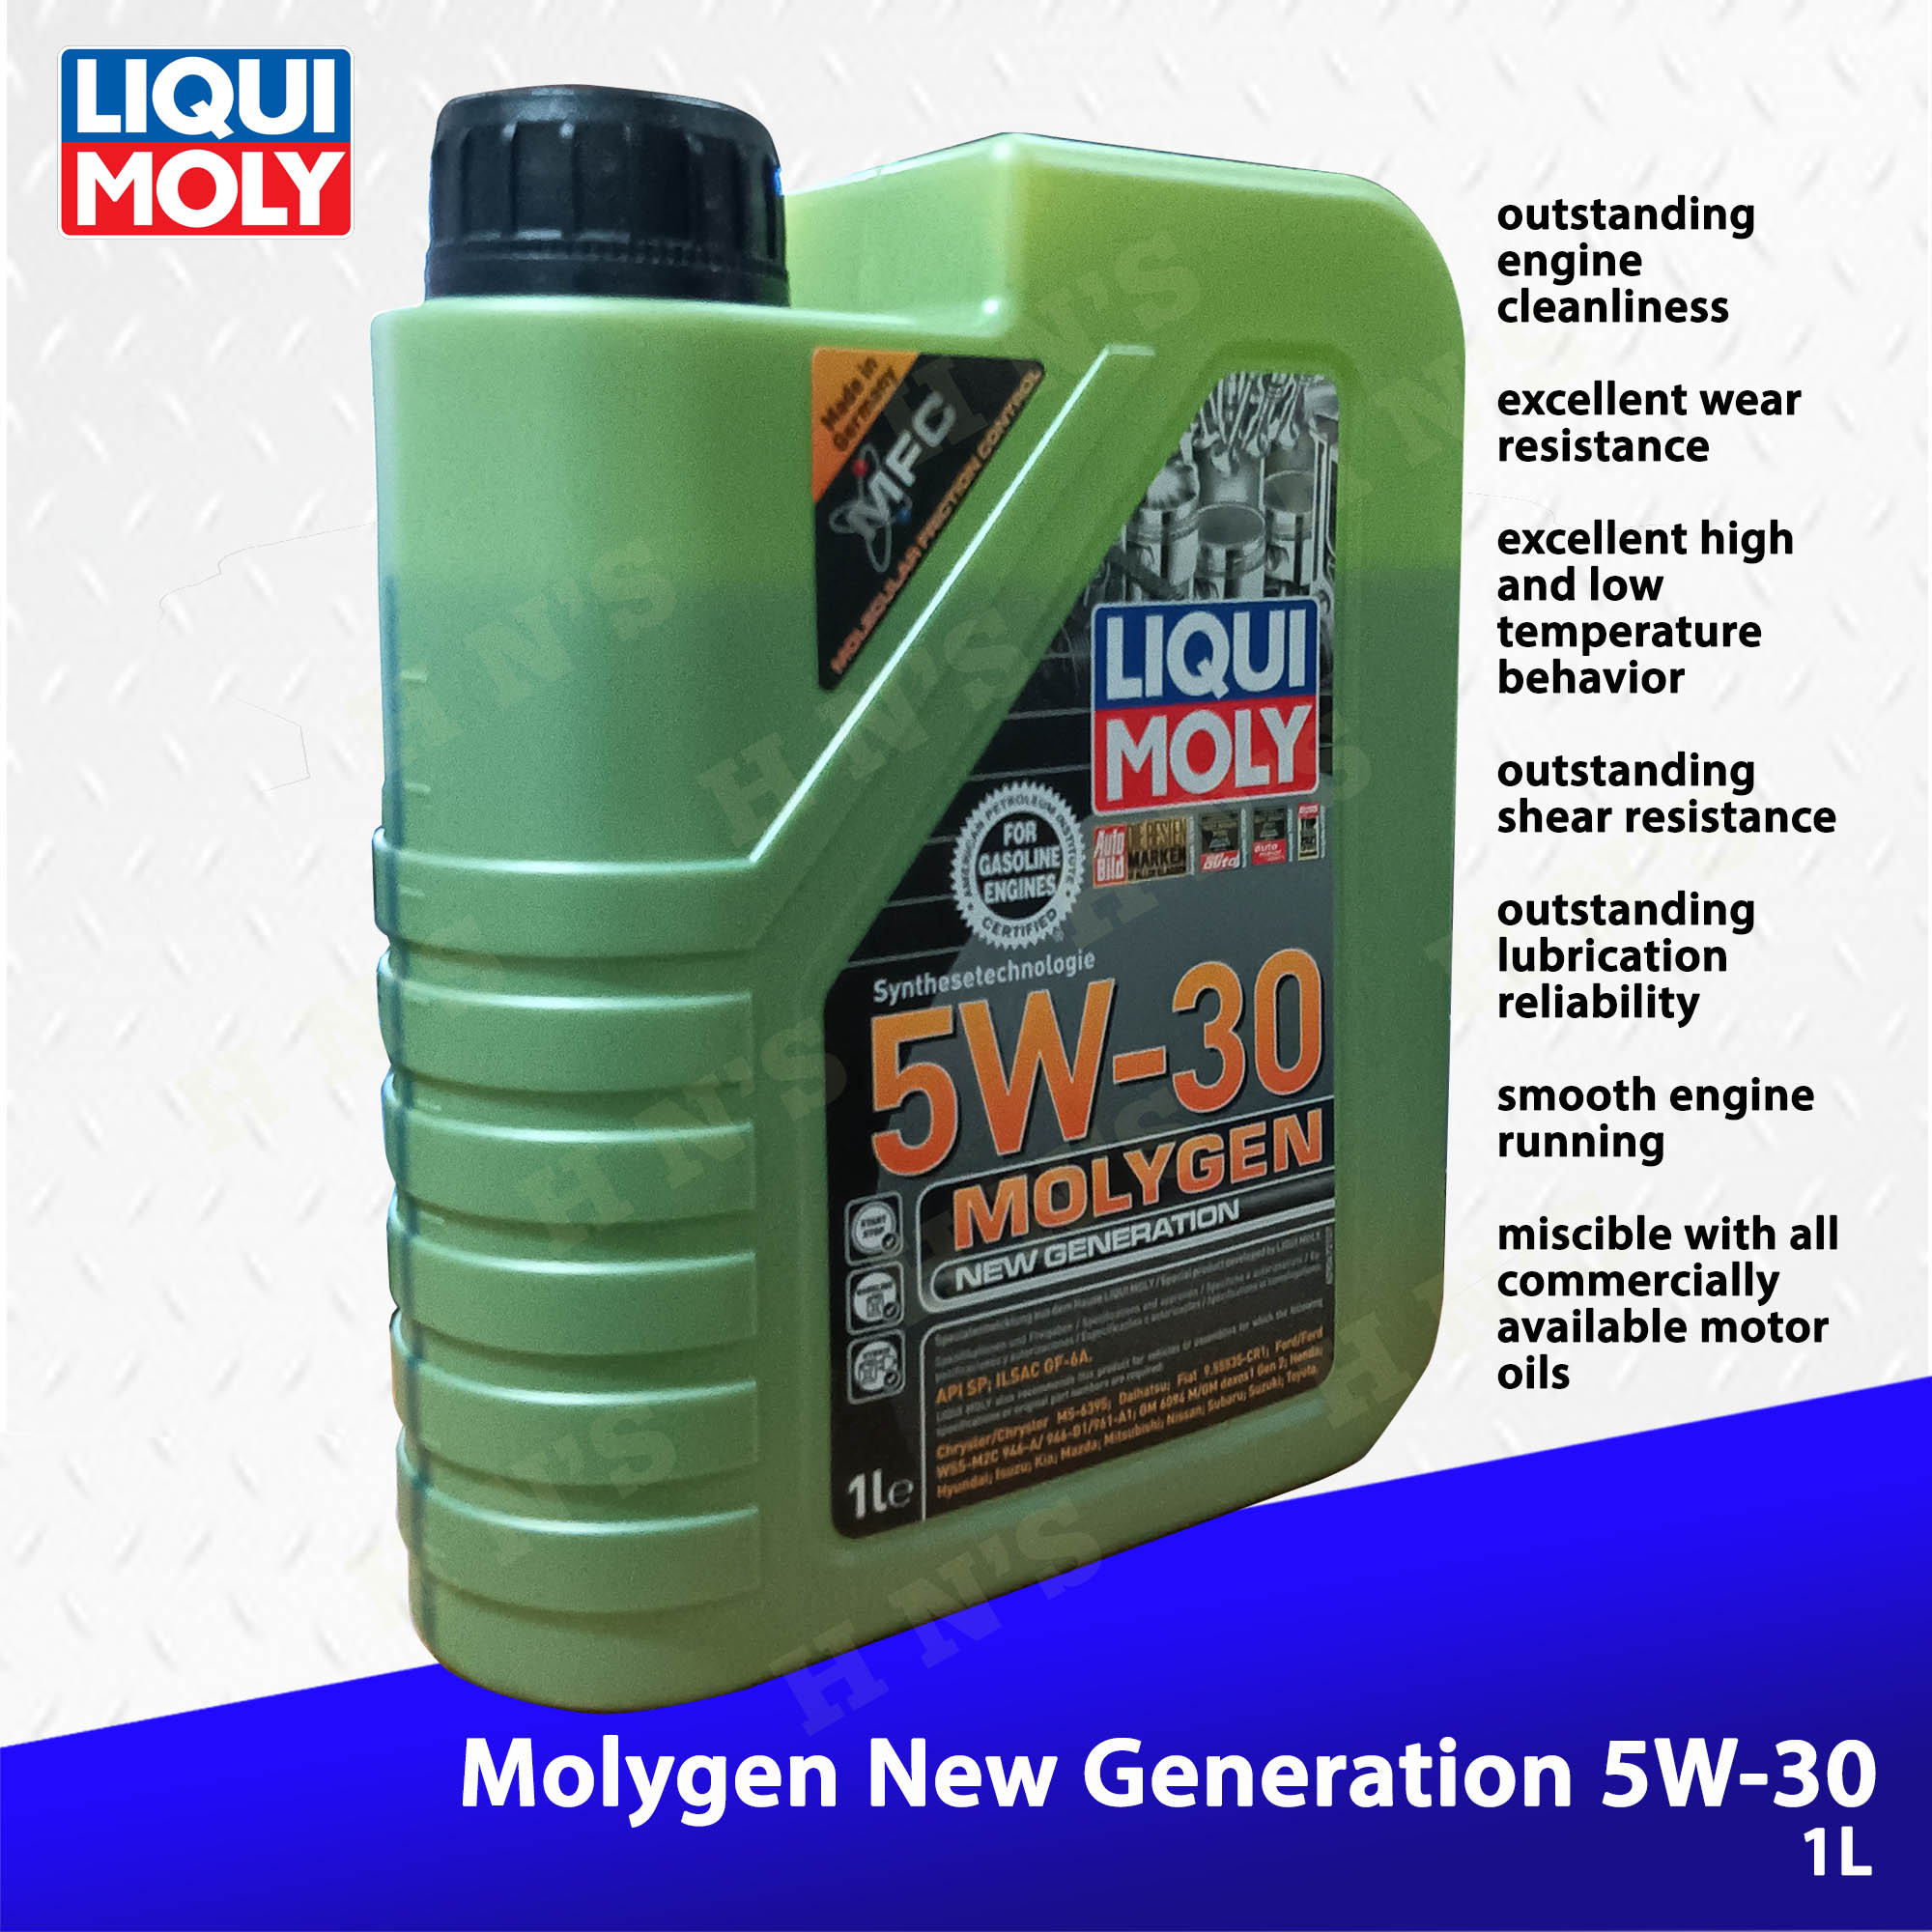 Liqui Moly Molygen New Generation 5W-30 Fully Synthetic 4L / 1L